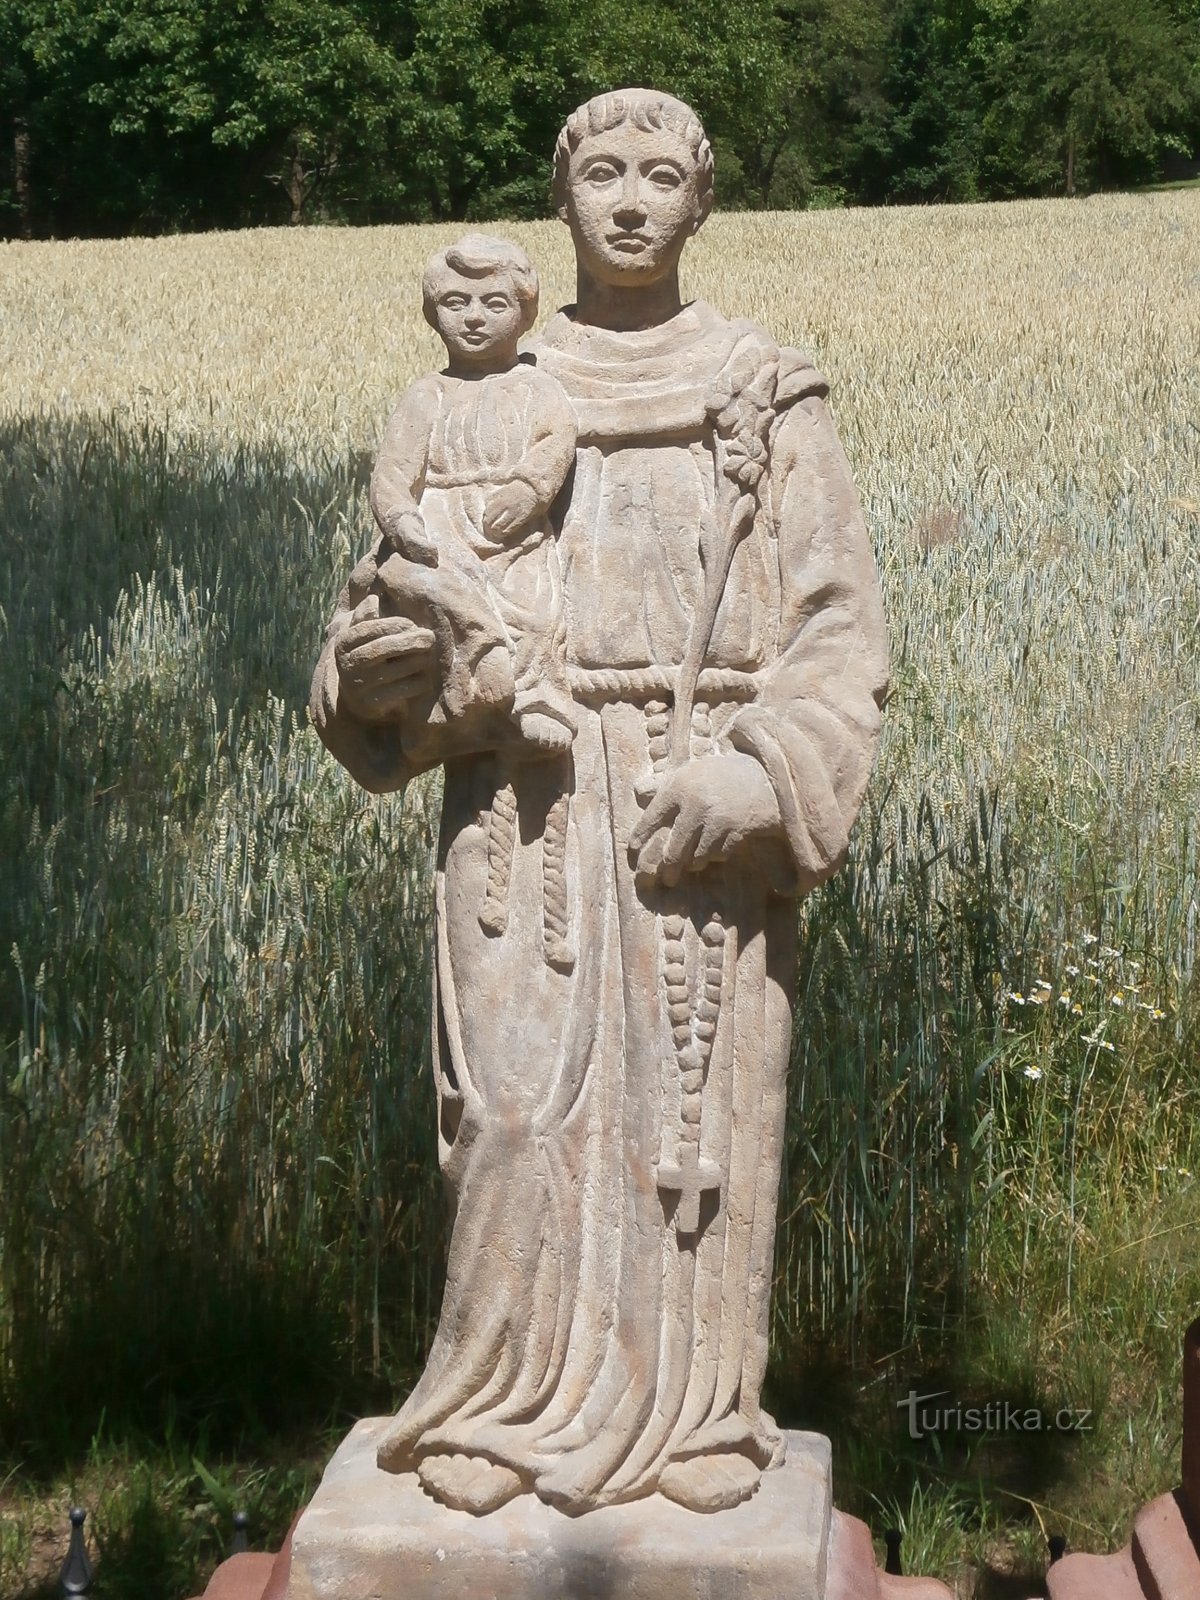 Kors på Podhradí (Havlovice)